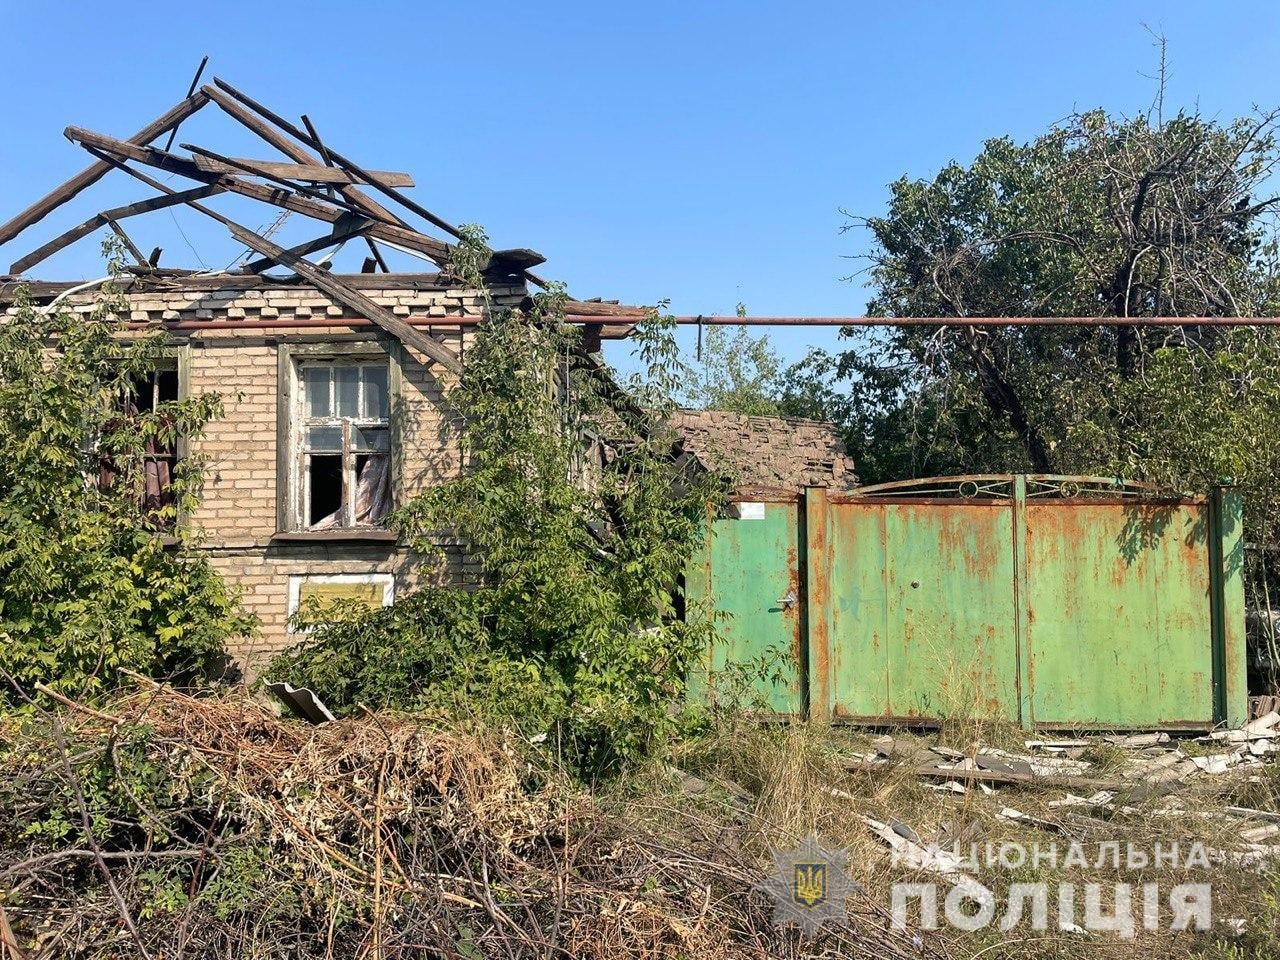 обстріляний приватний будинок в Донецькій області